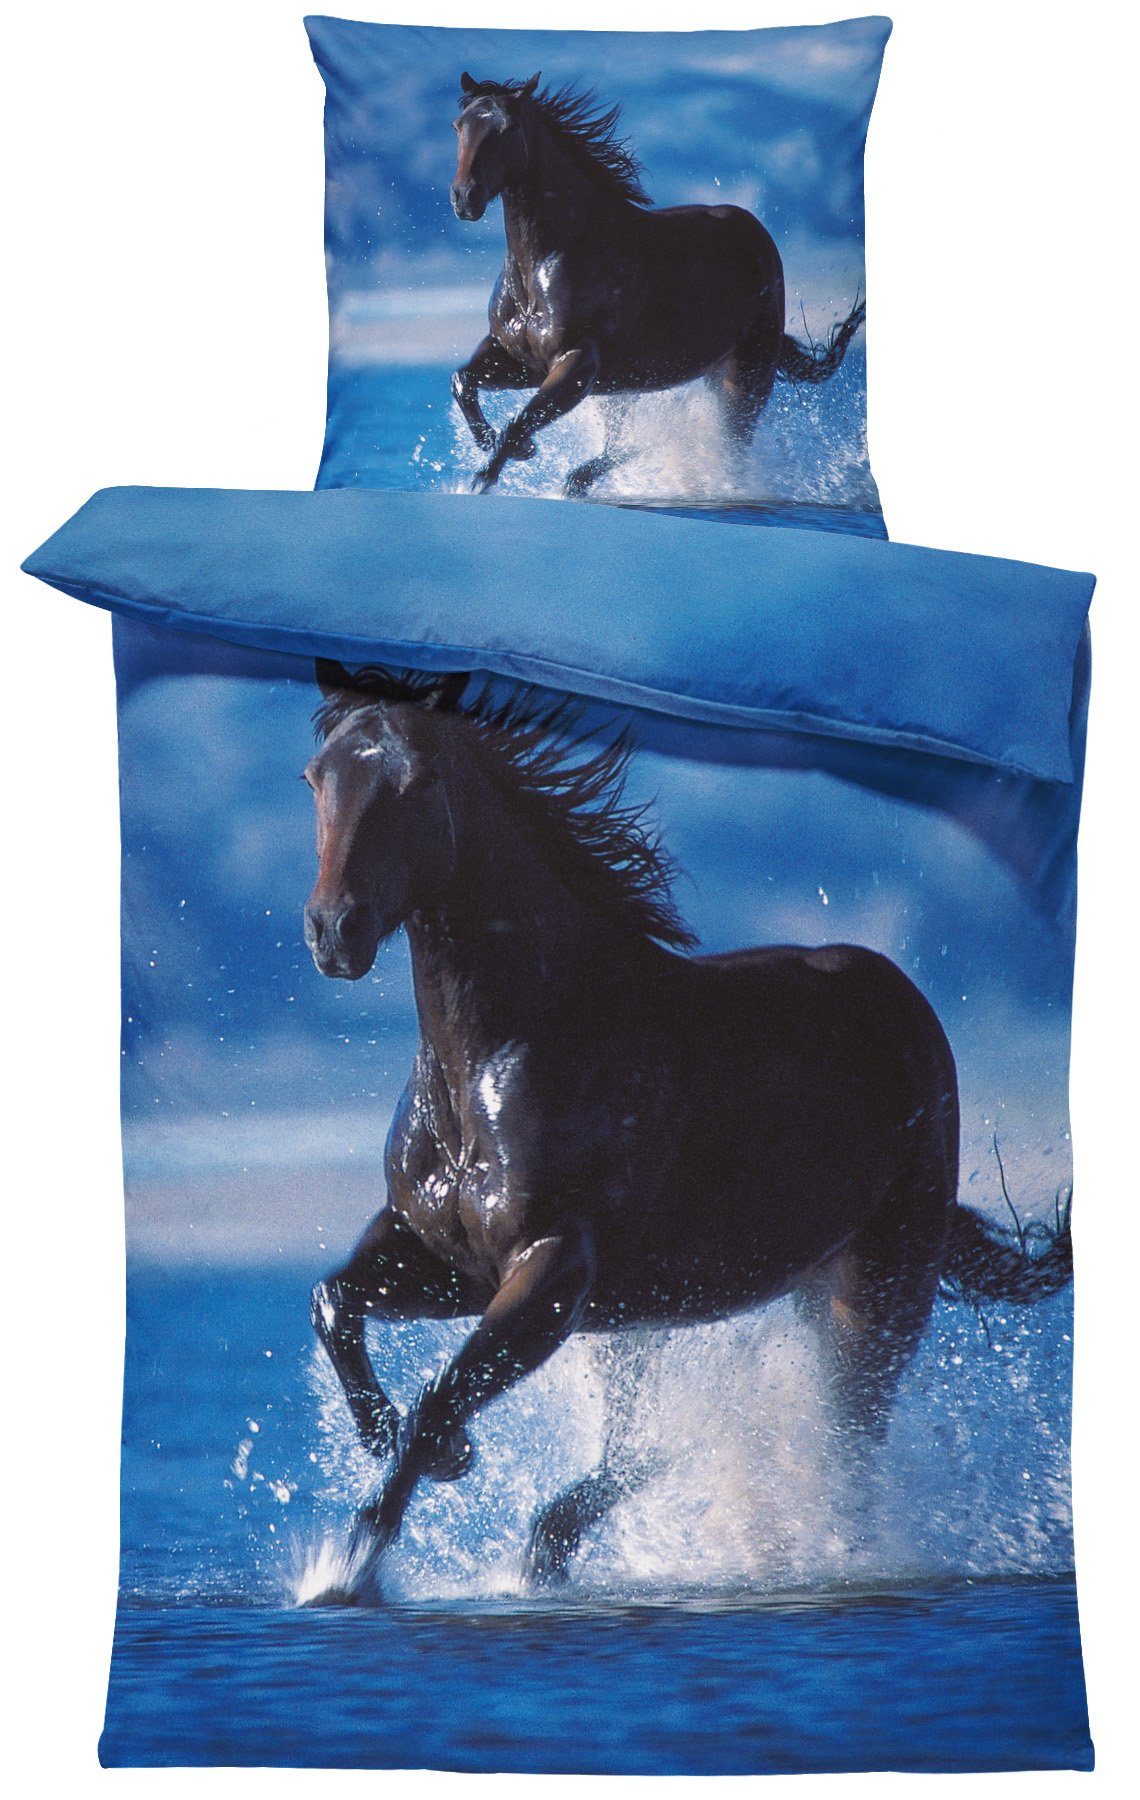 Bettwäsche Pferd im Wasser, One Home, Mikrofaser, 2 teilig, mit schwarzem  Pferd